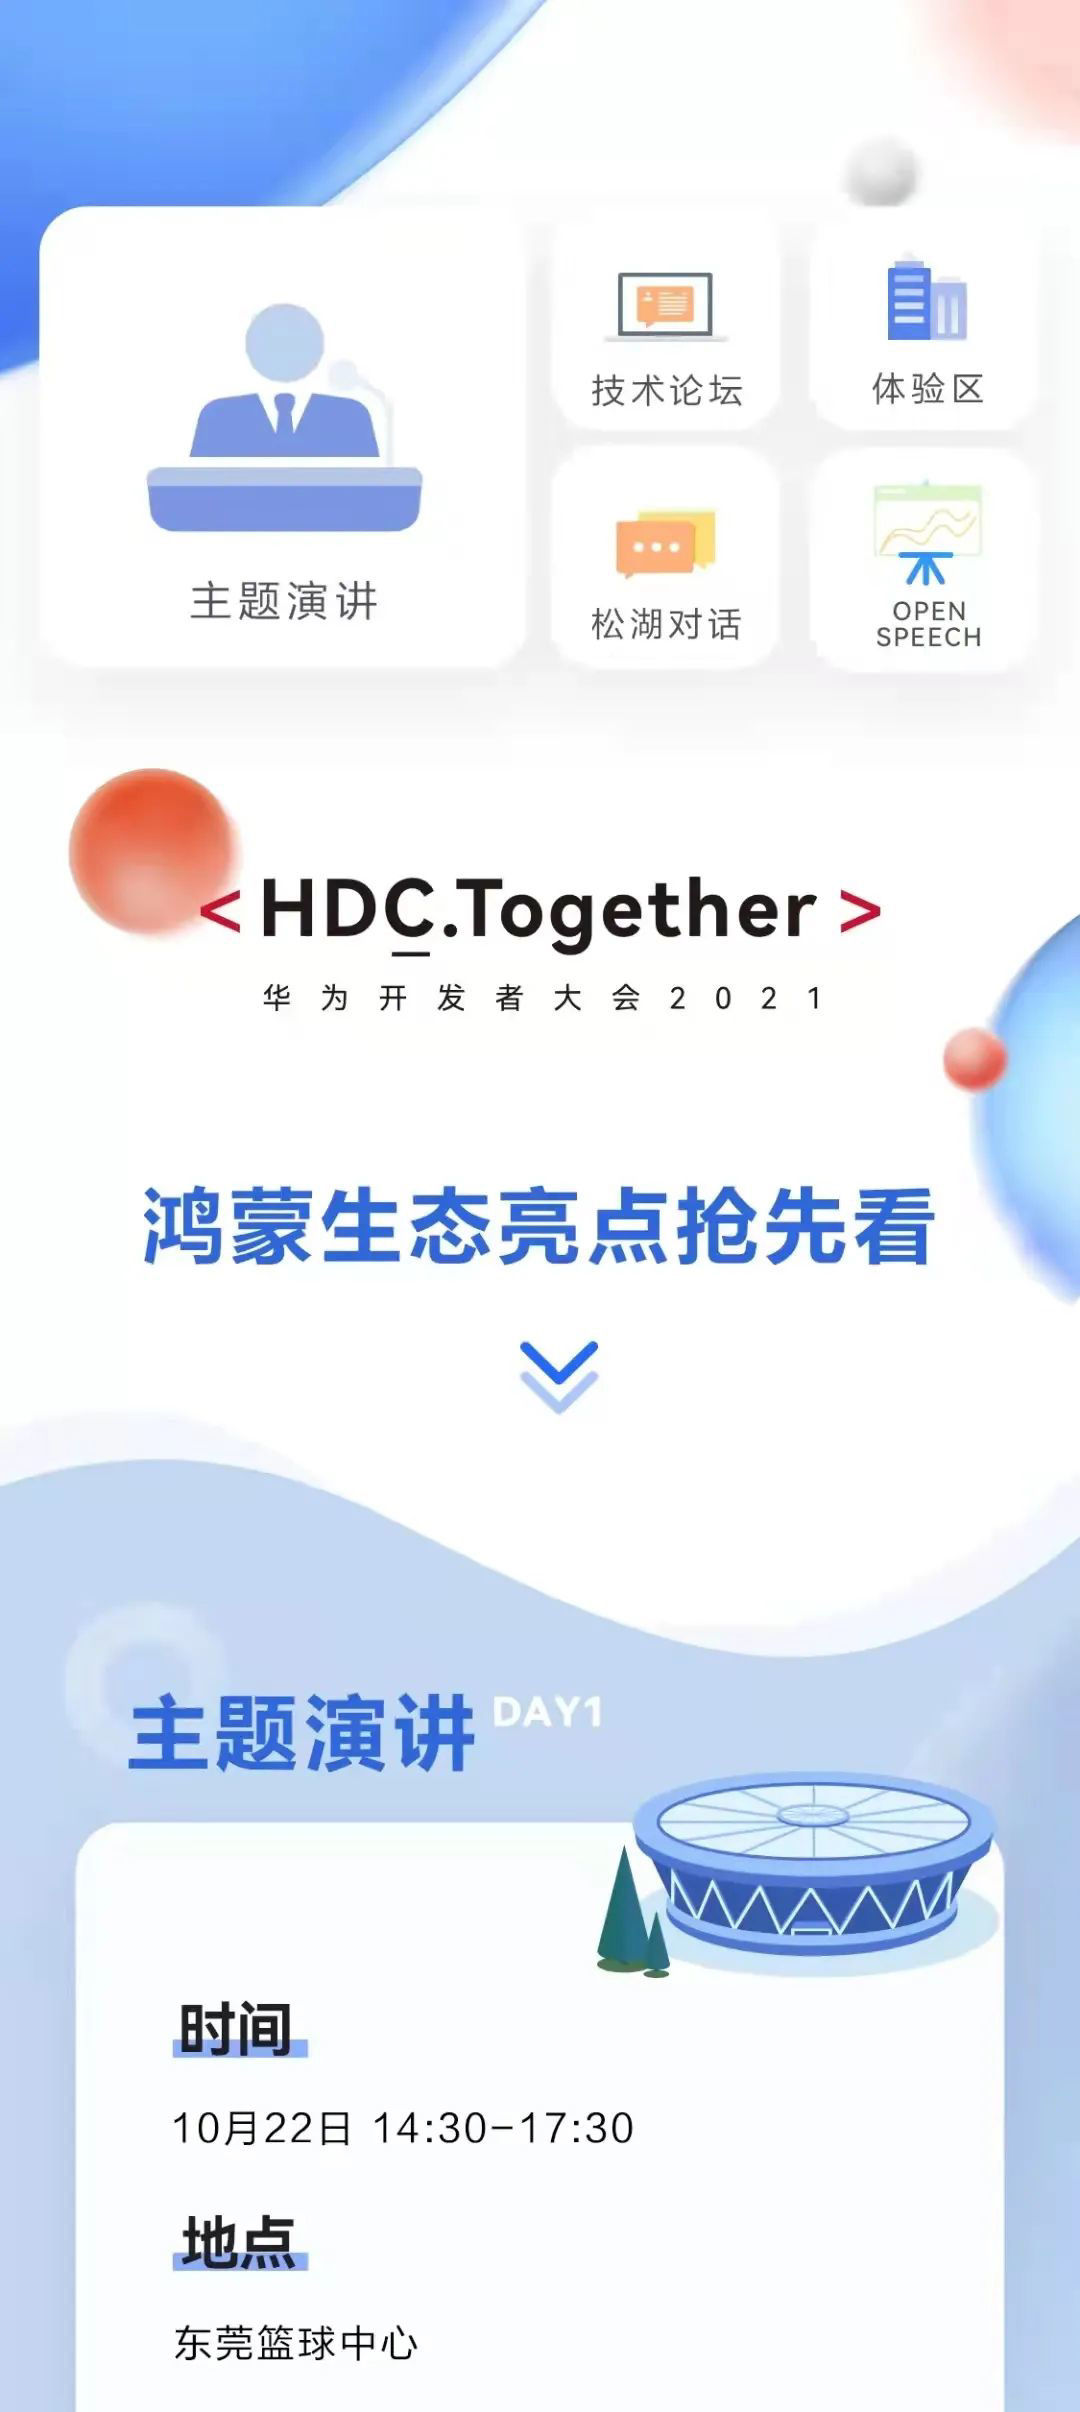 演讲|华为开发者大会HDC 2021主题演讲内容公布